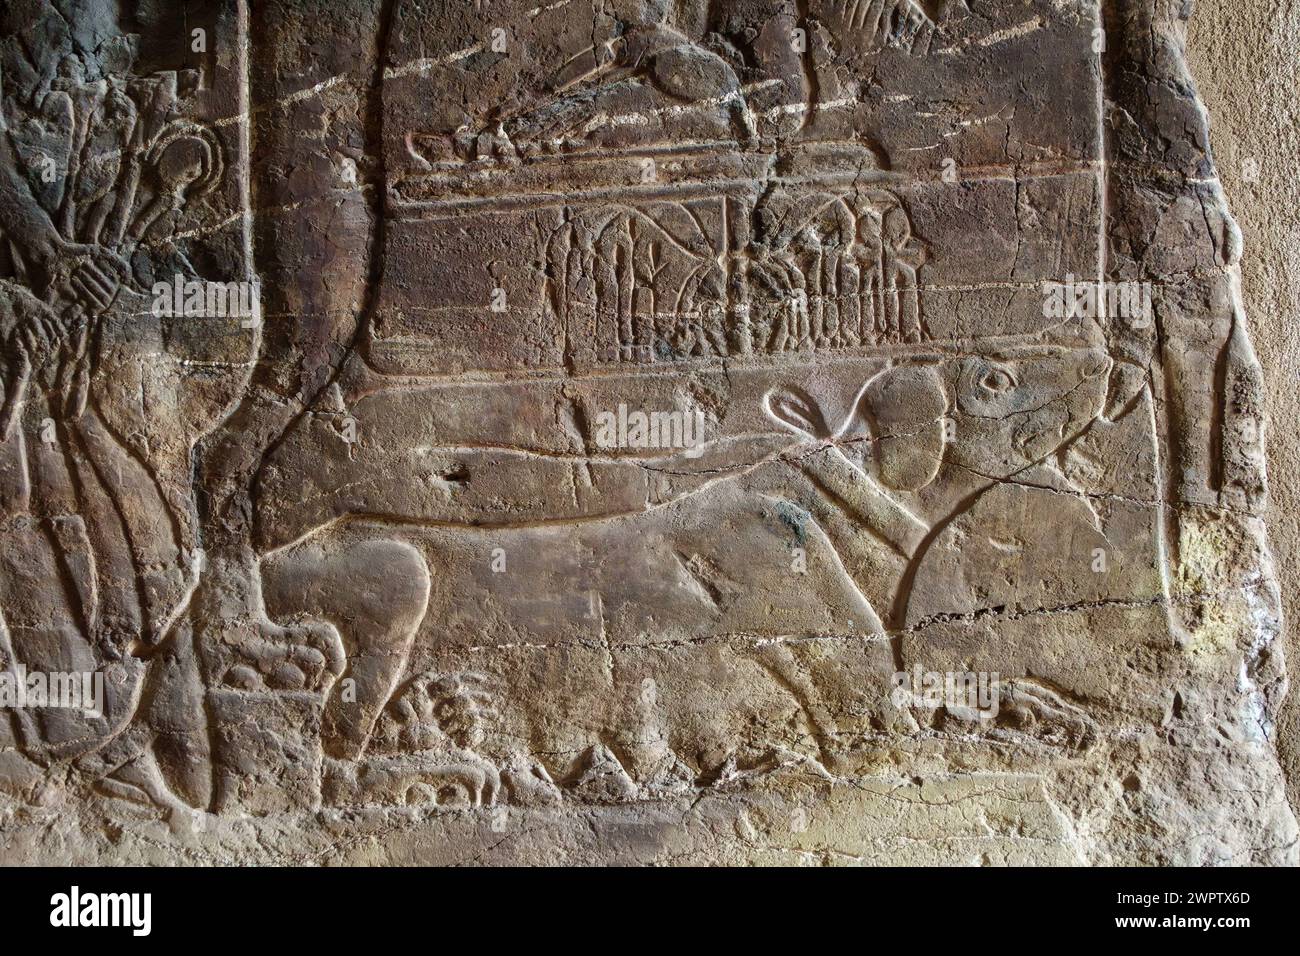 Cane seduto sotto la sedia nella tomba di Maia, infermiera bagnata di Tutankhamon, Bubasteion, Saqqara, Egitto Foto Stock